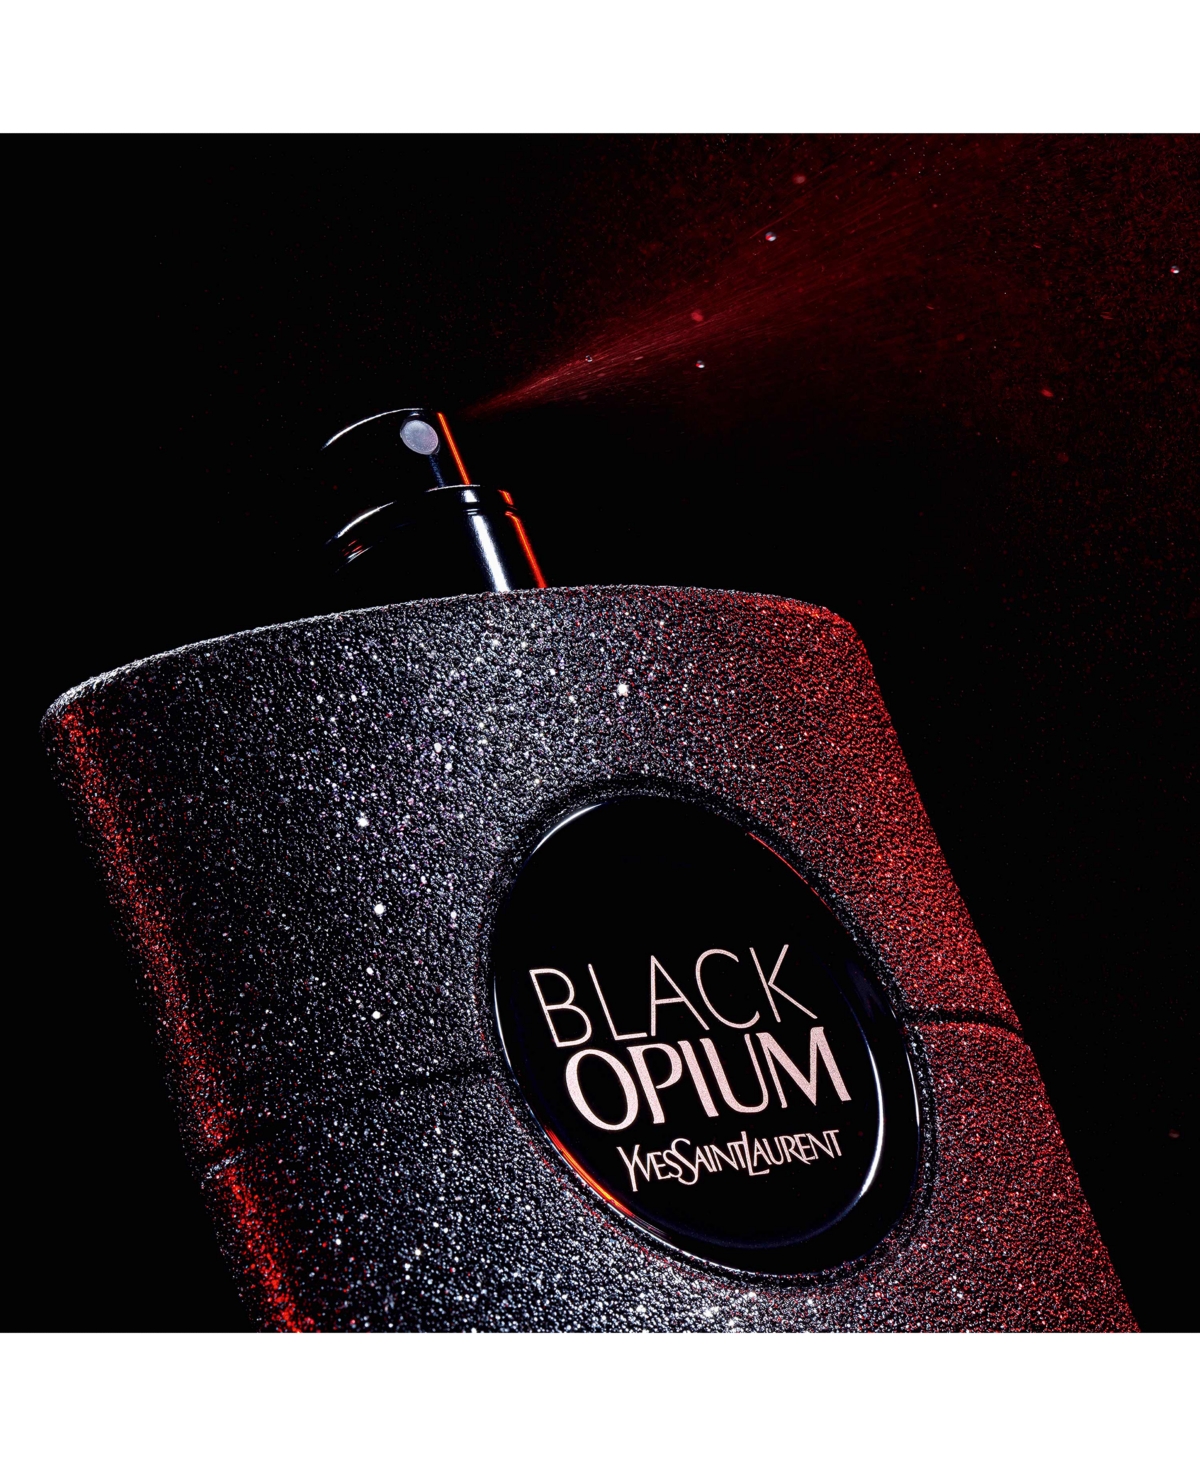 Shop Saint Laurent Black Opium Eau De Parfum Extreme Spray, 1.6-oz. In No Color